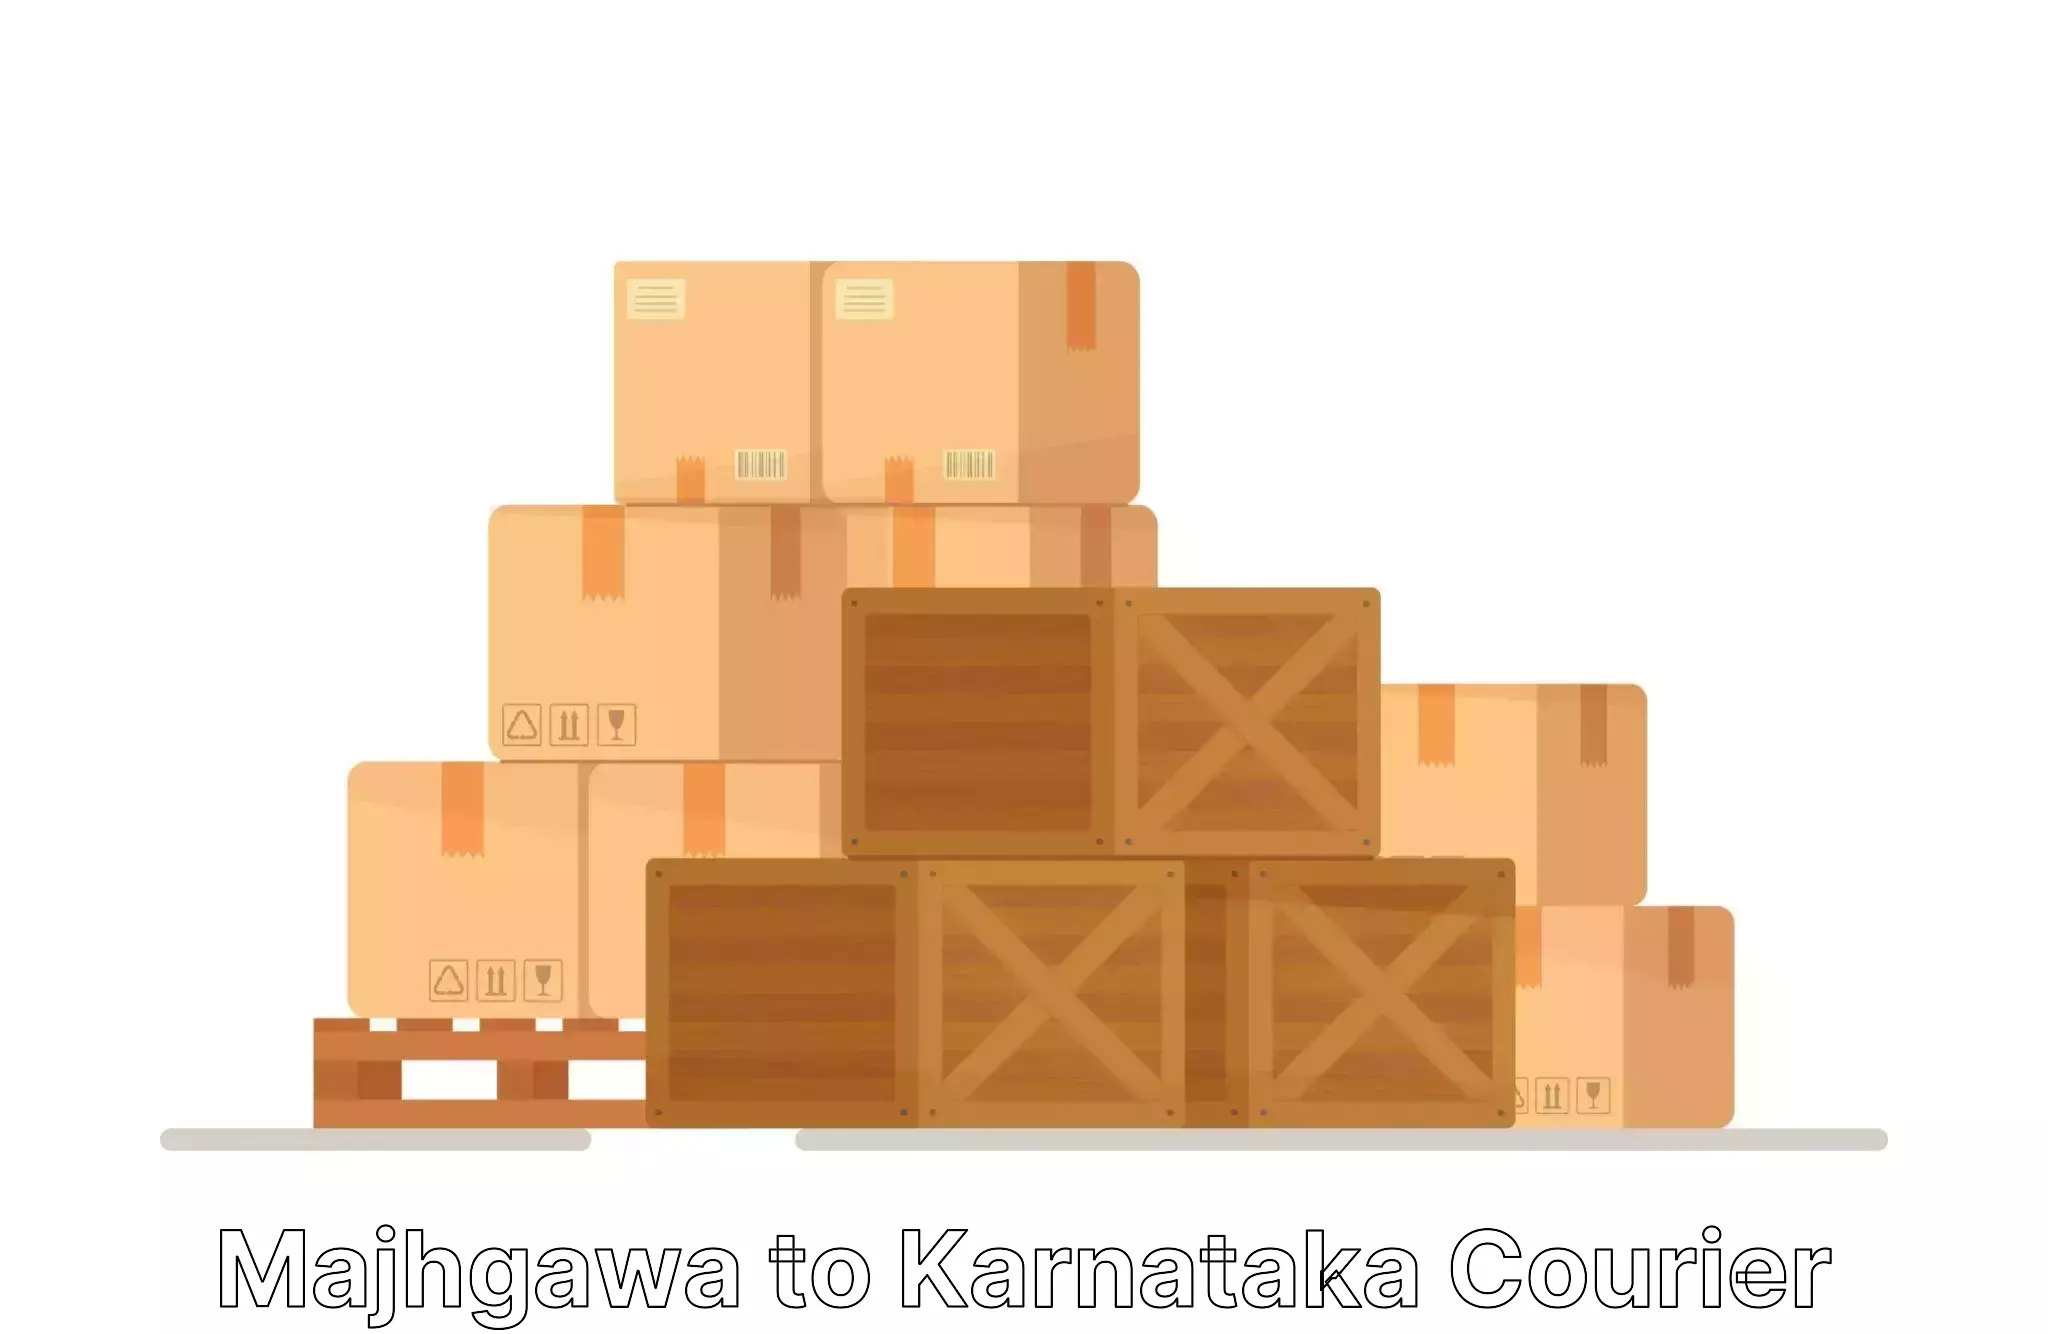 Home furniture shifting Majhgawa to Karnataka